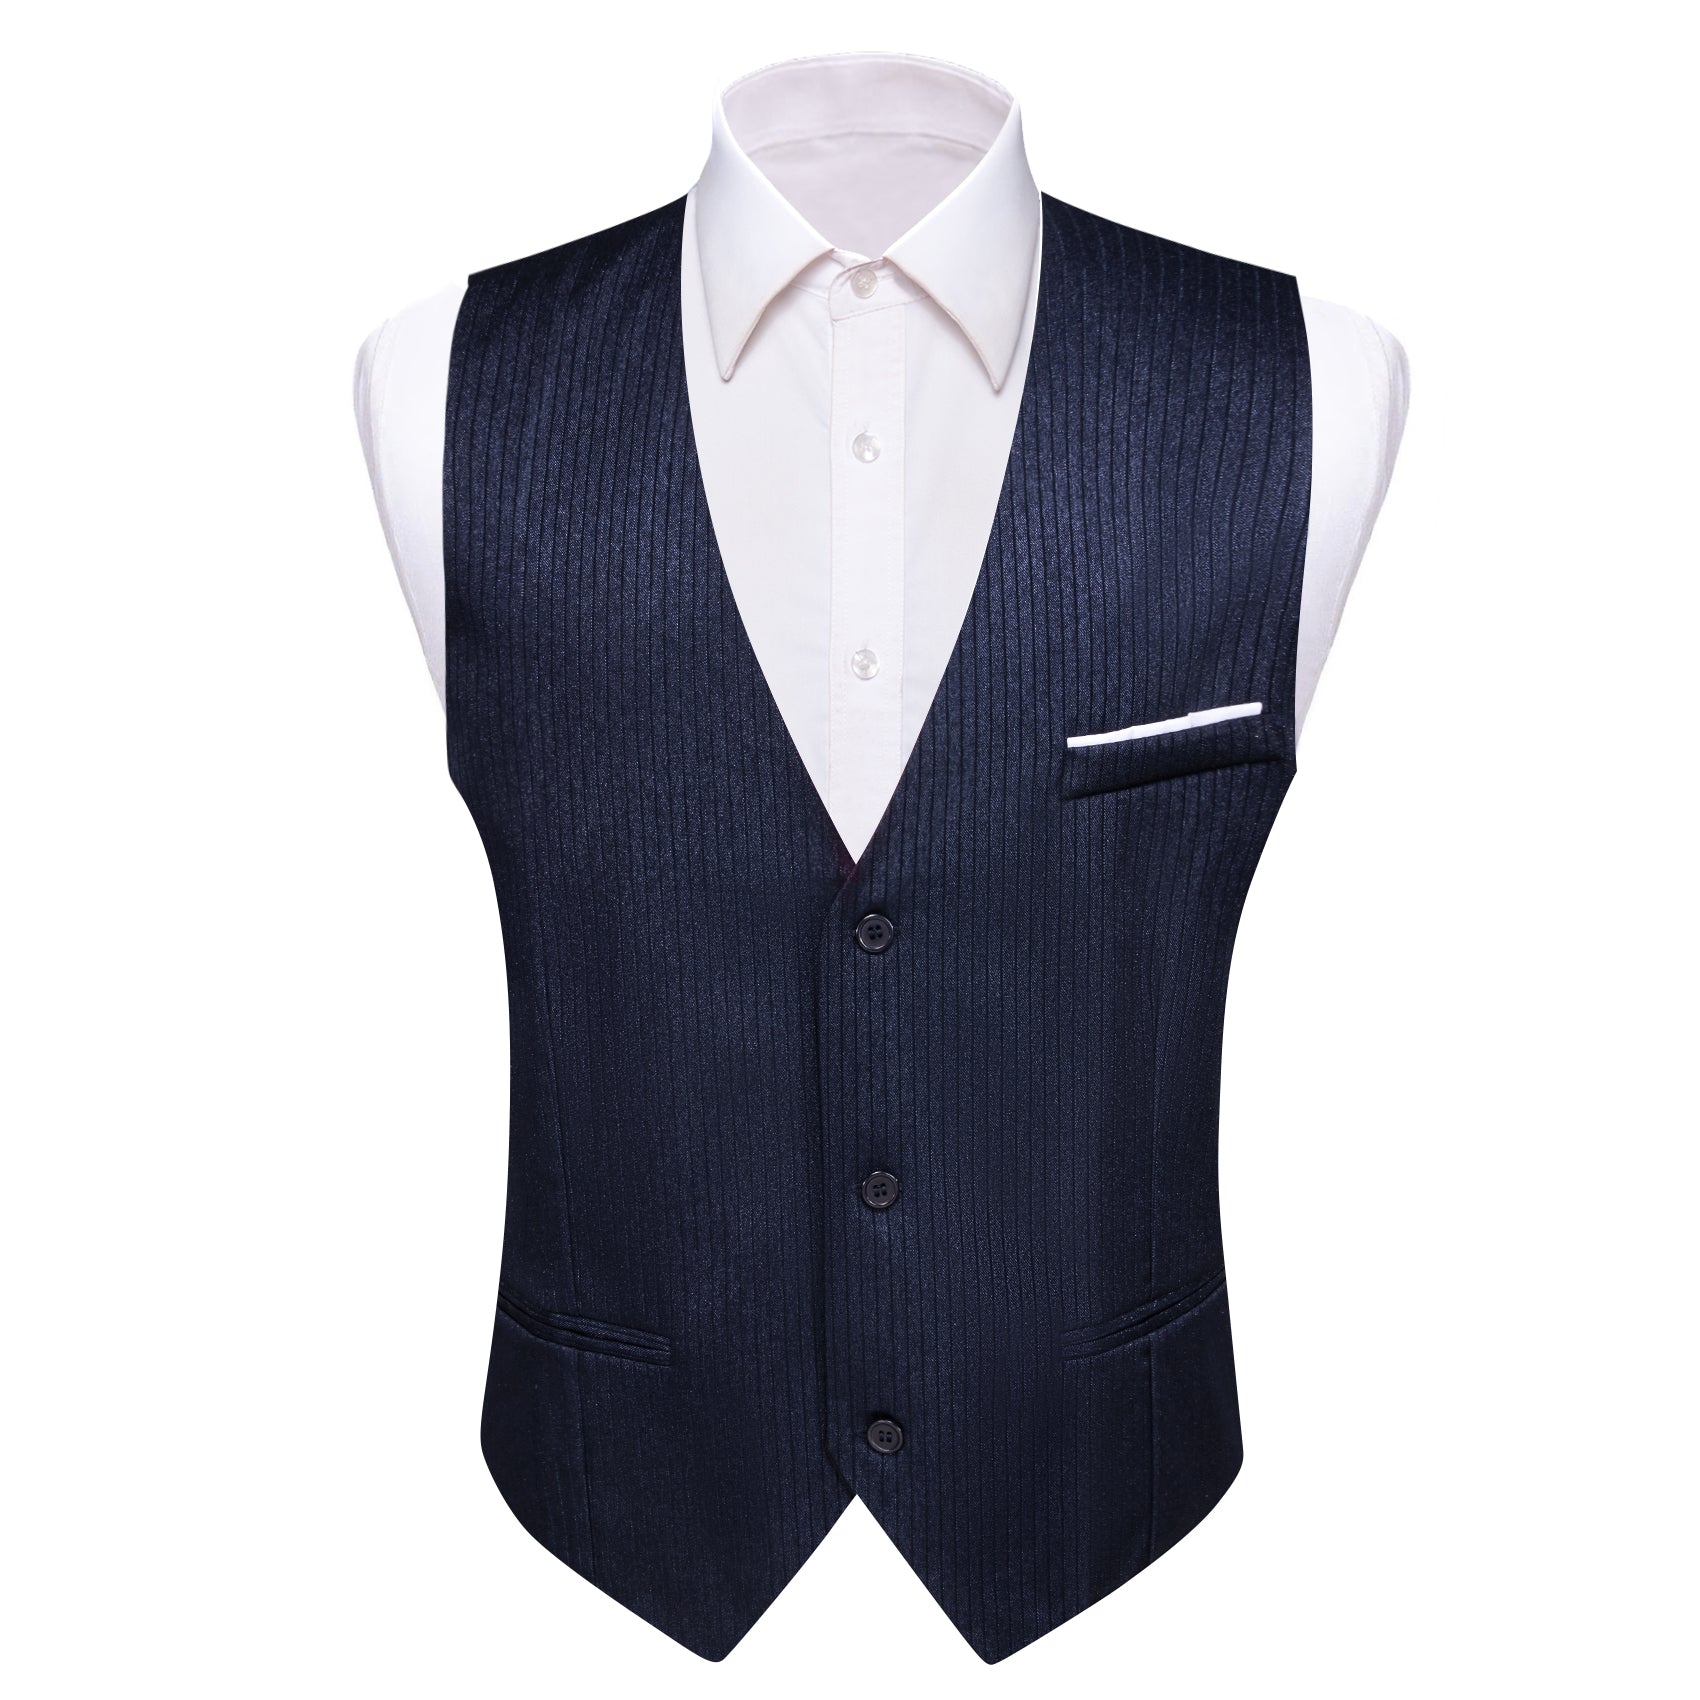 Barry.wang Blue Black Solid Business Vest Suit